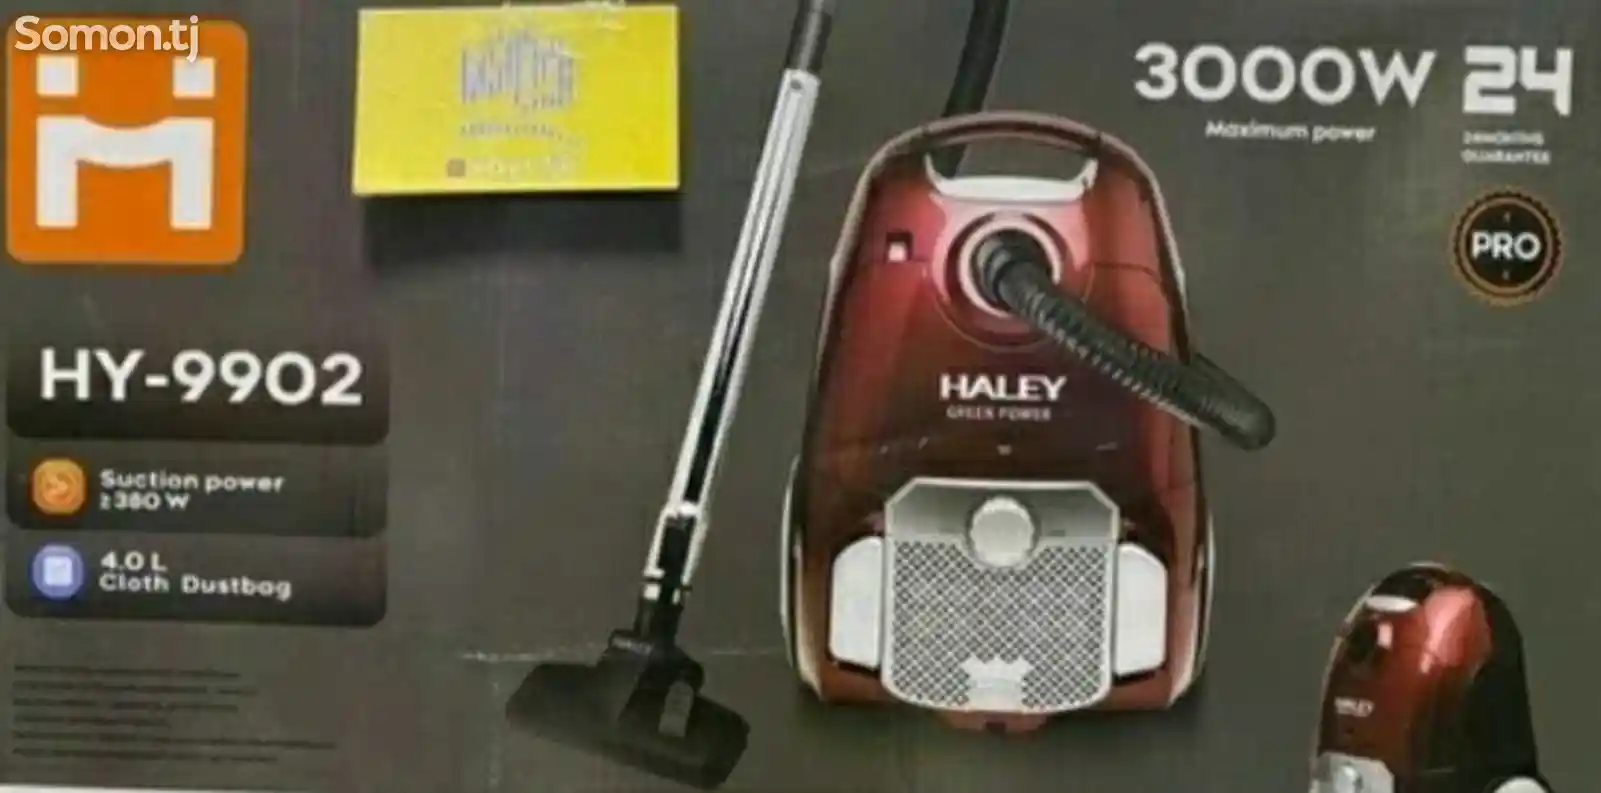 Пылесос Haley Hy-9902